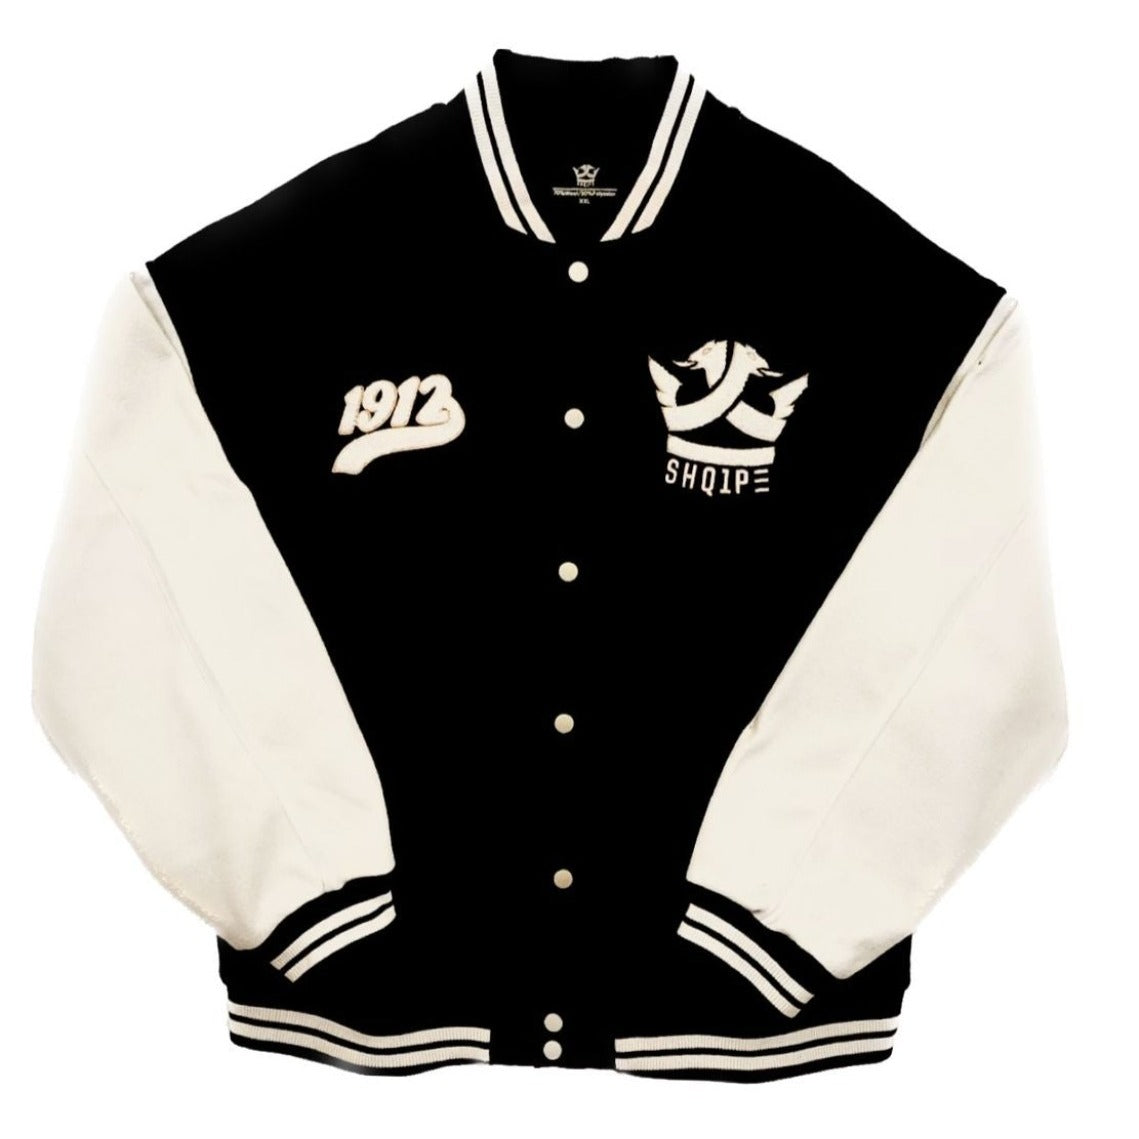 White & Black Varsity Two Tone Jacket